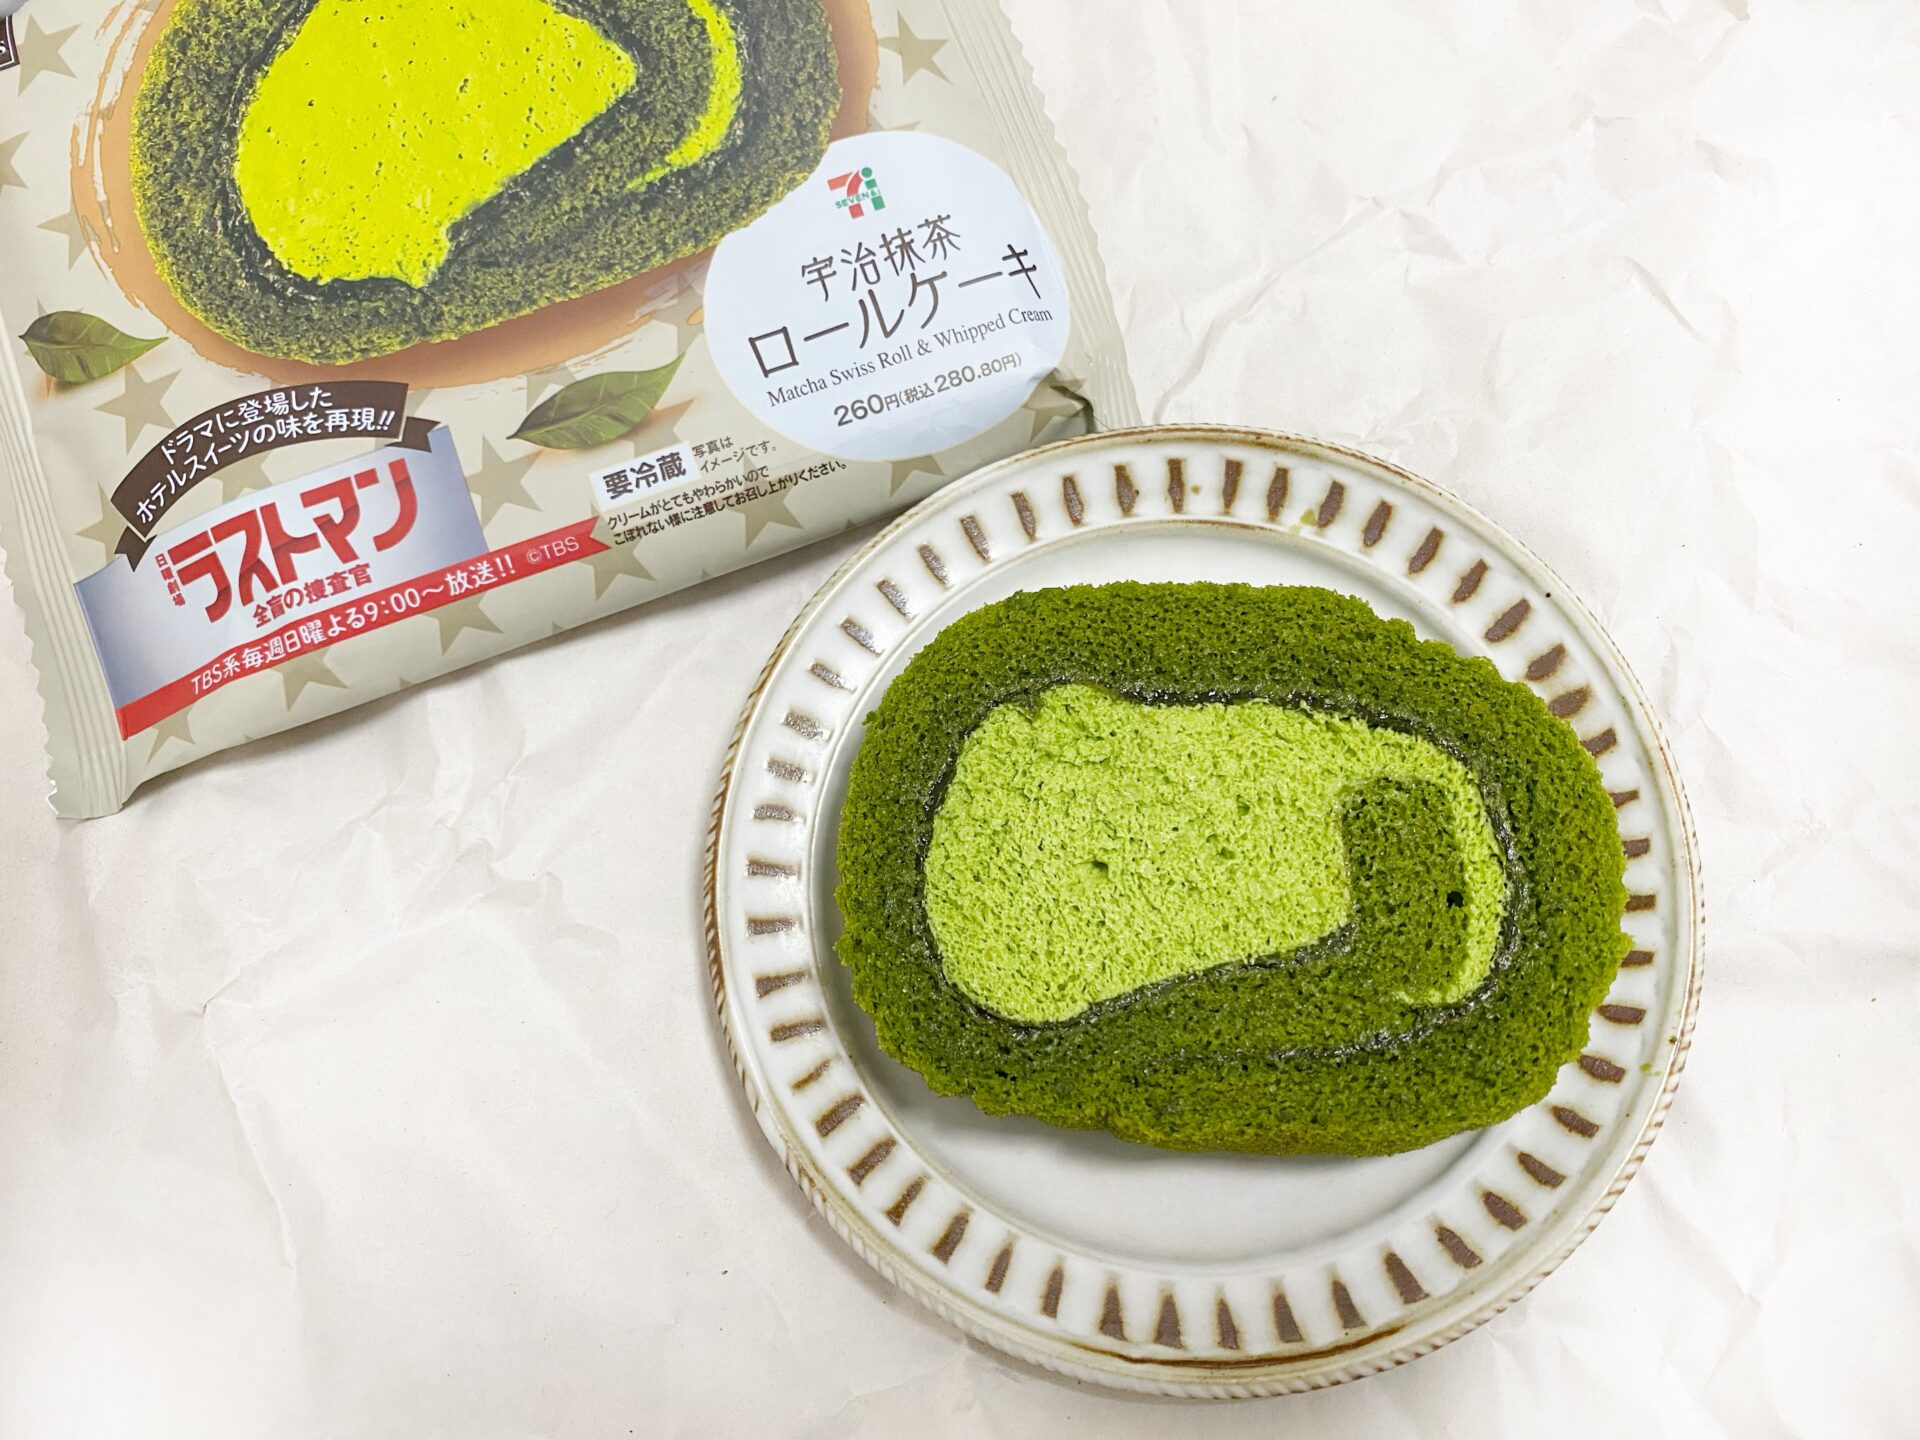 宇治抹茶ロールのパッケージと、お皿にのった宇治抹茶ロールケーキの写真。緑いろのコントラストがうつくしいです